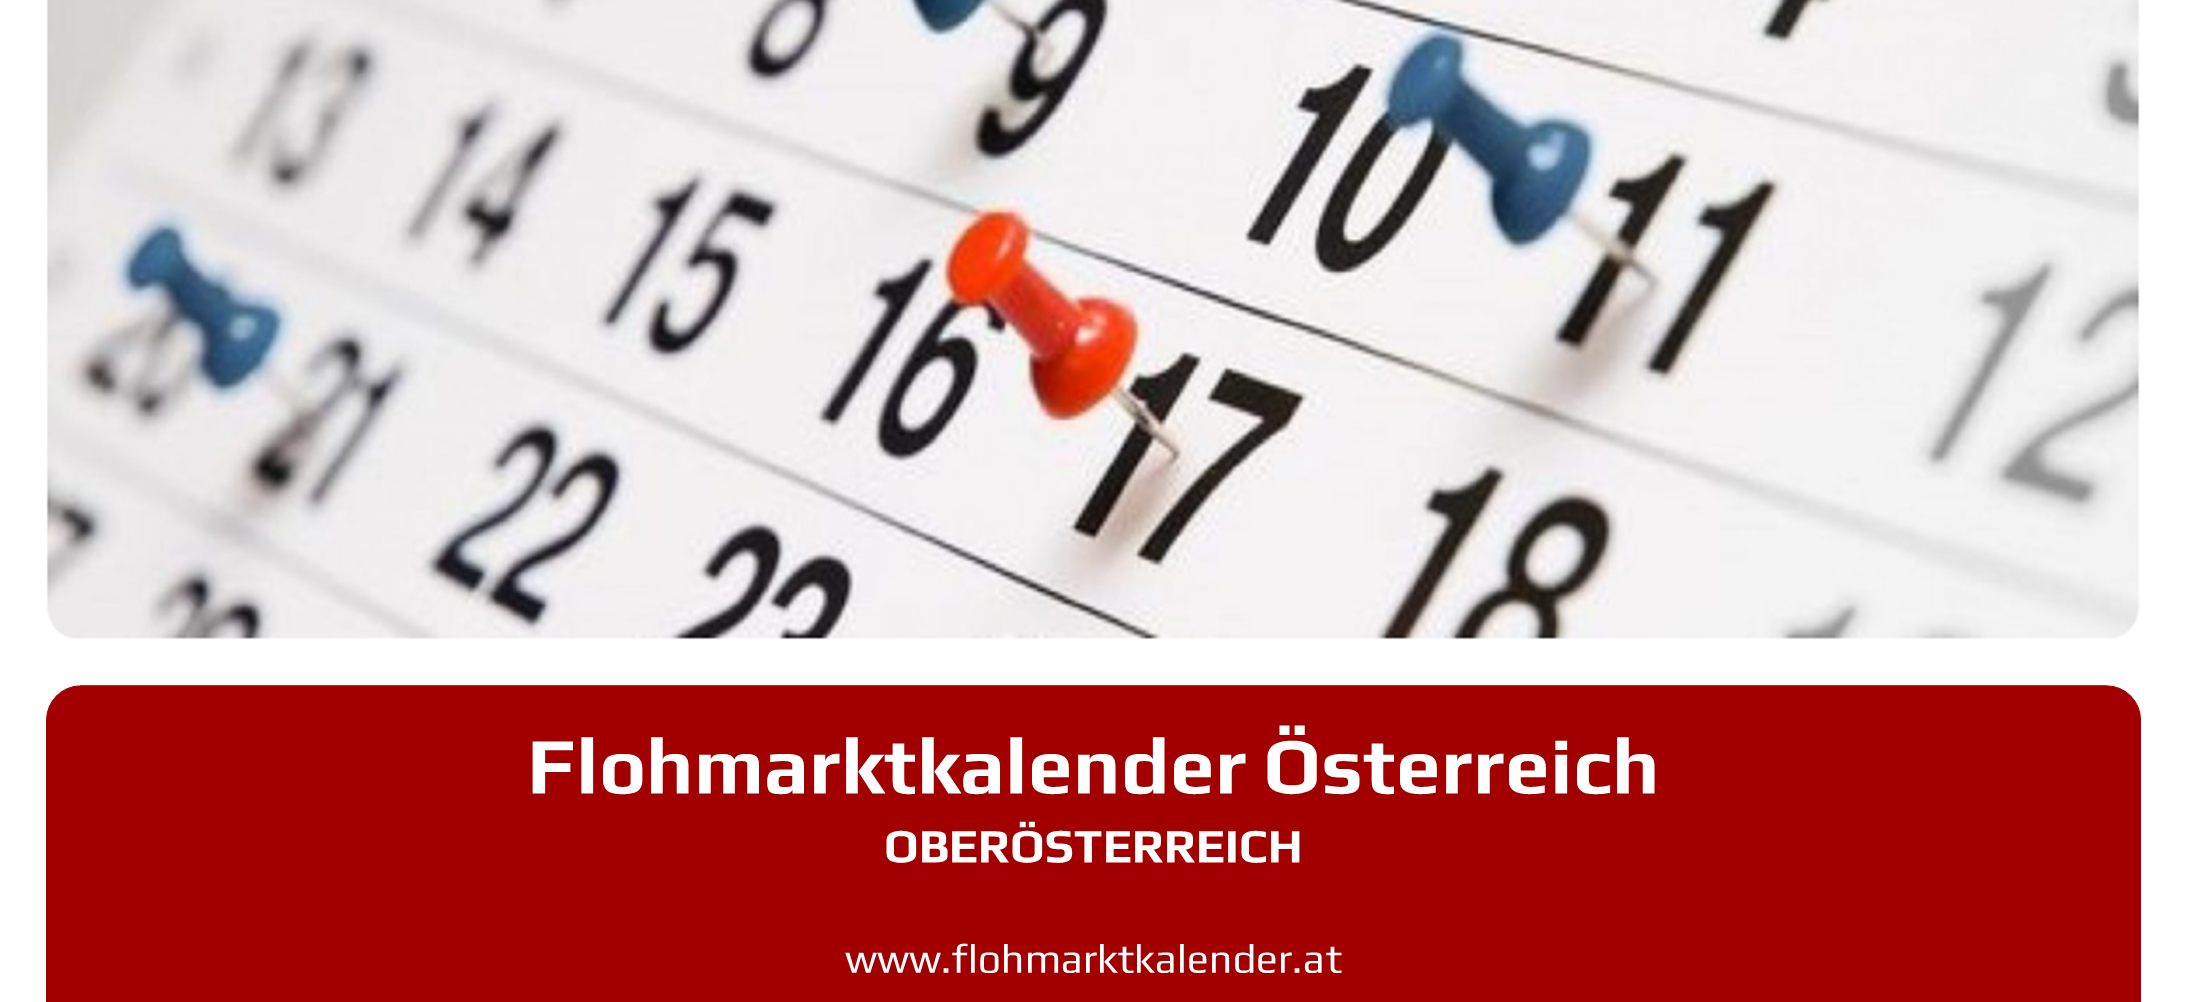 Flohmarktkalender Oberoesterreich 24